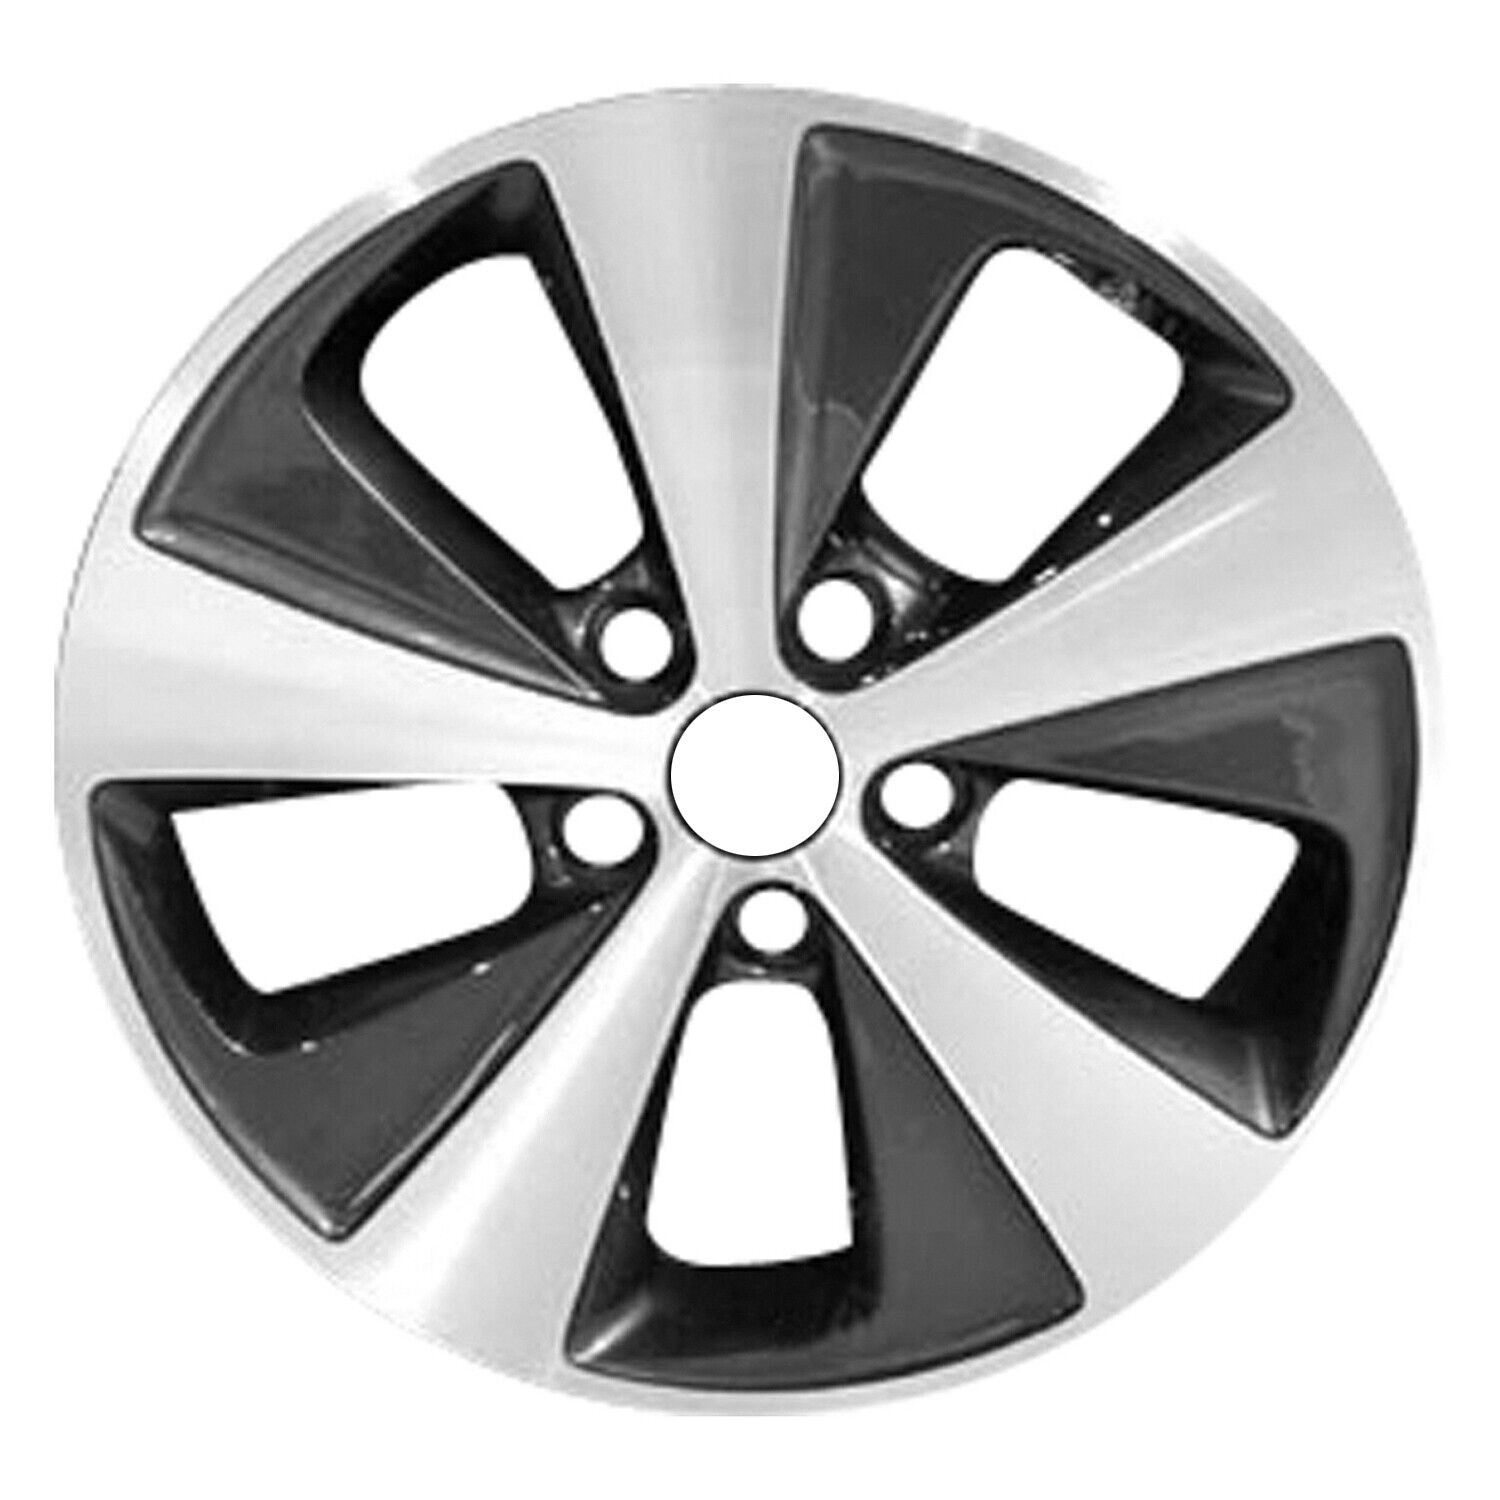 70810 Reconditioned OEM Aluminum Wheel 17x6.5 fits 2011-2013 Hyundai Sonata